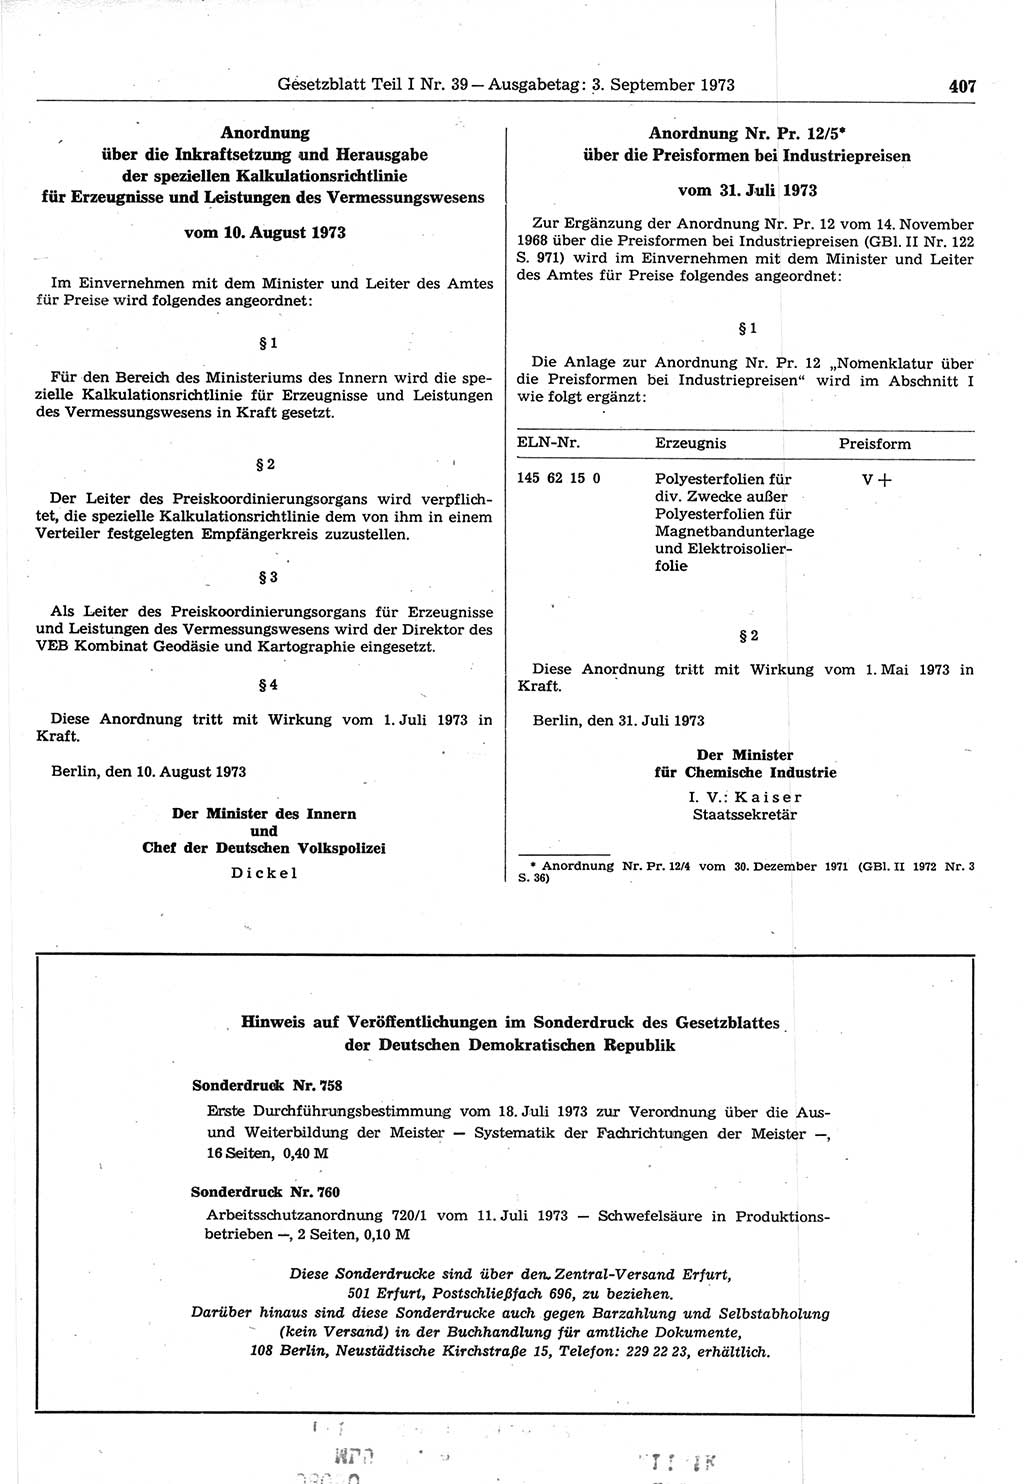 Gesetzblatt (GBl.) der Deutschen Demokratischen Republik (DDR) Teil Ⅰ 1973, Seite 407 (GBl. DDR Ⅰ 1973, S. 407)